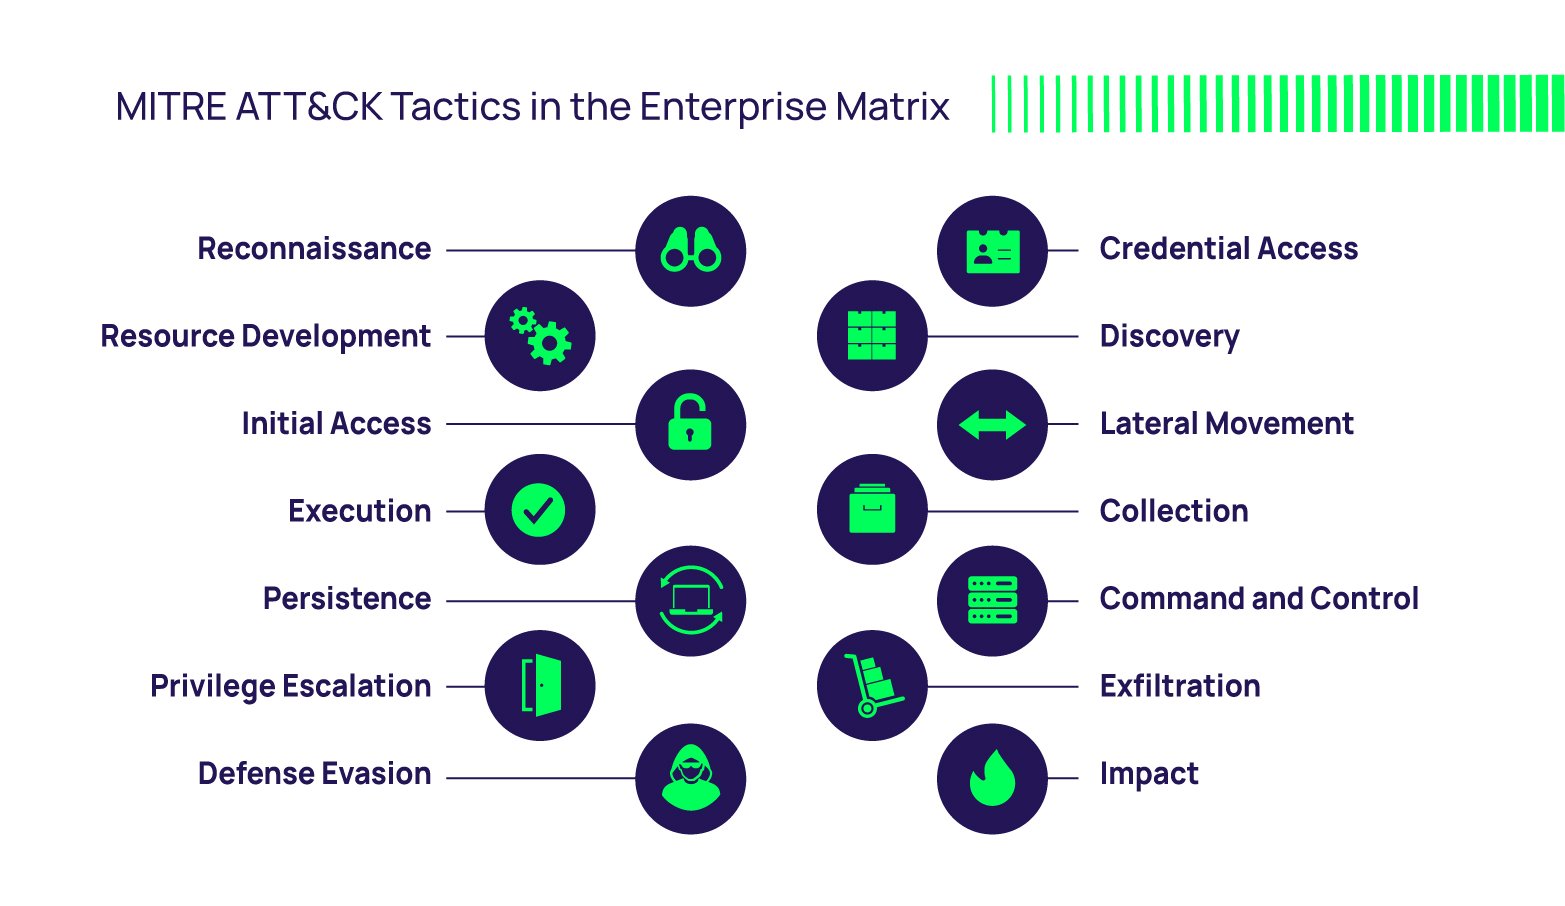 Mitre Attack Tactics in the Enterprise Matrix